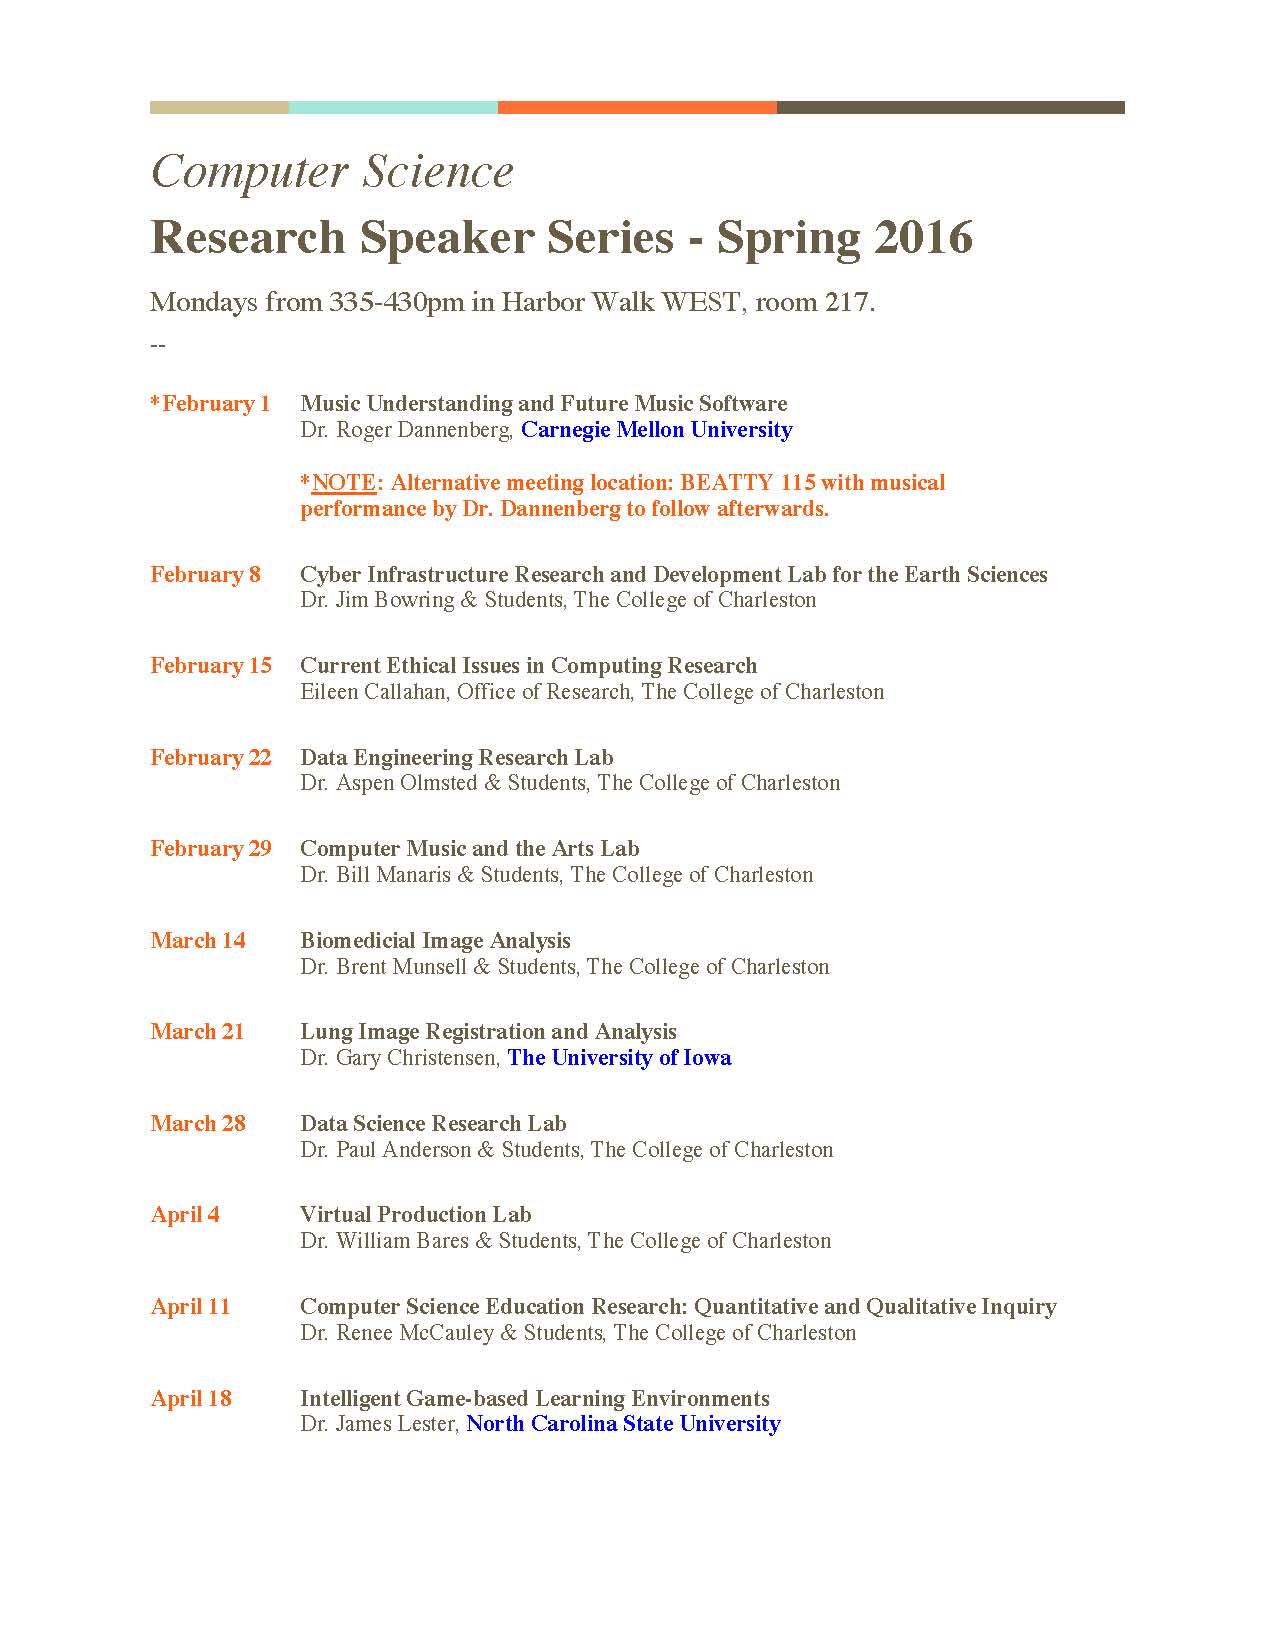 ComputerScienceSpeakerSeries-Spring2016